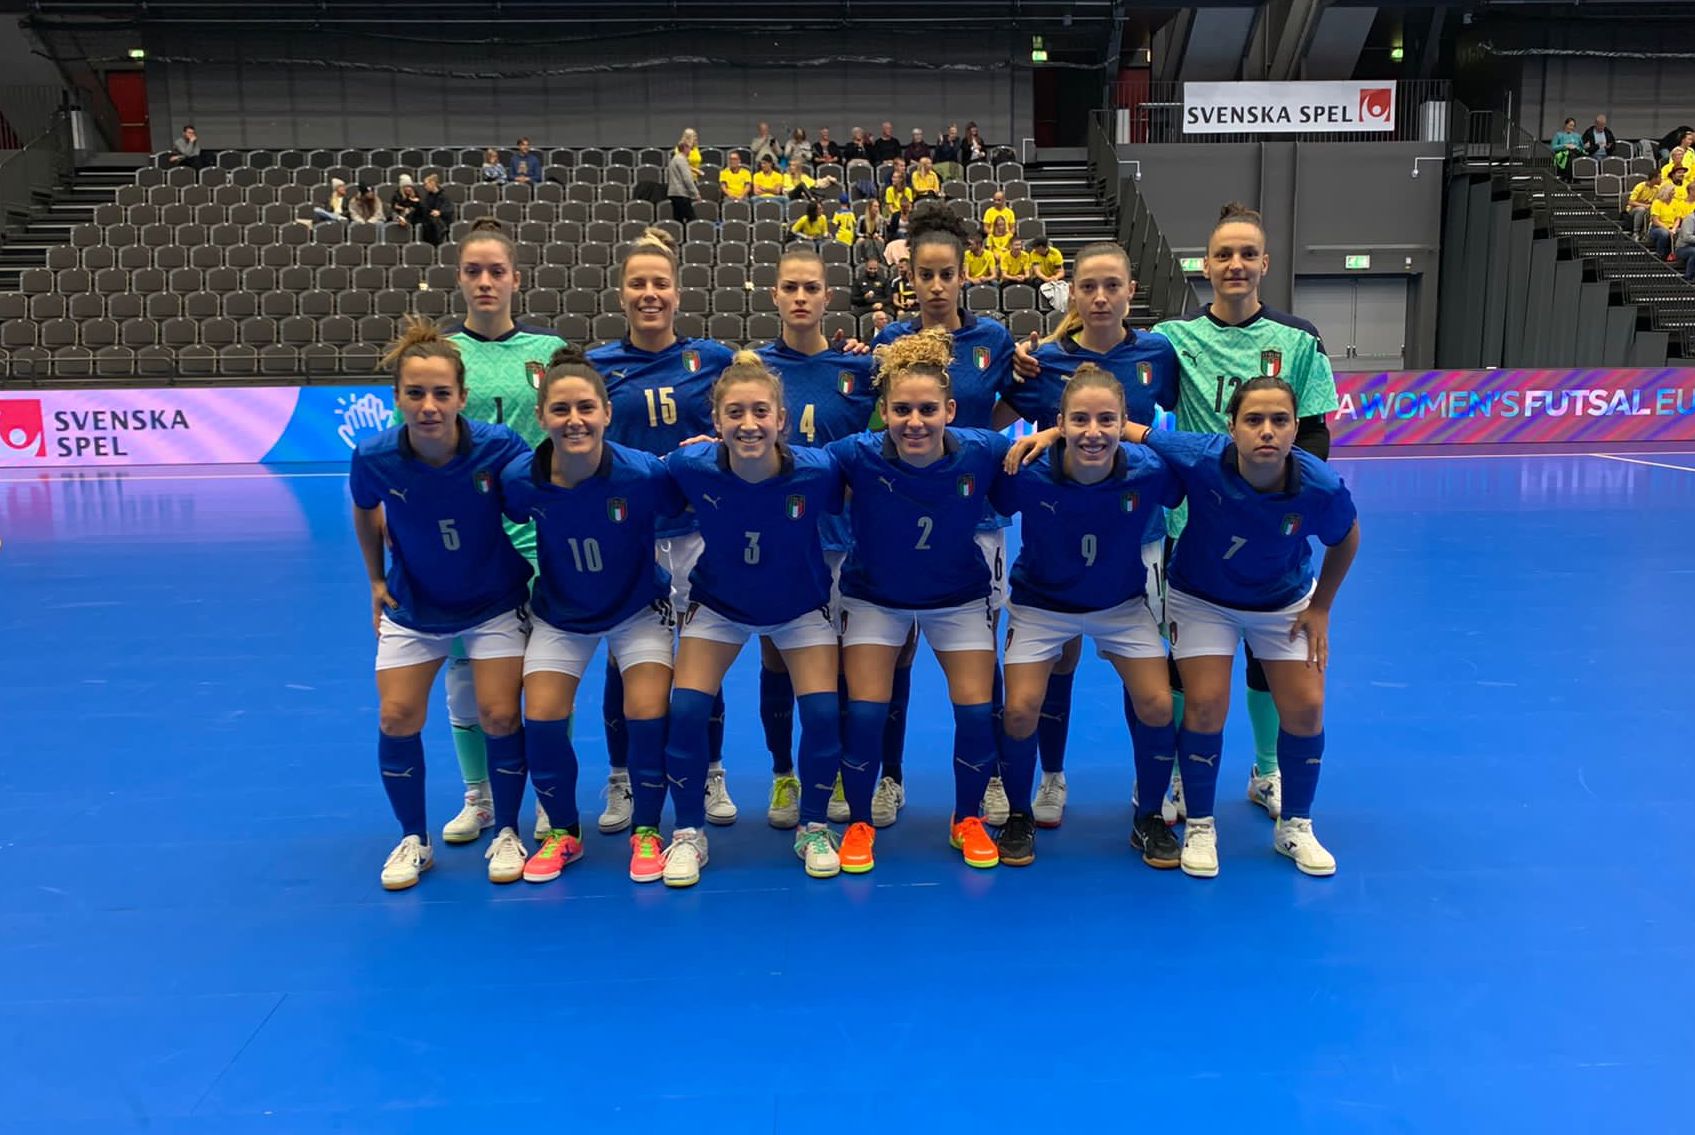 La Nazionale italiana femminile in Svezia per il Main Round di Euro 2022